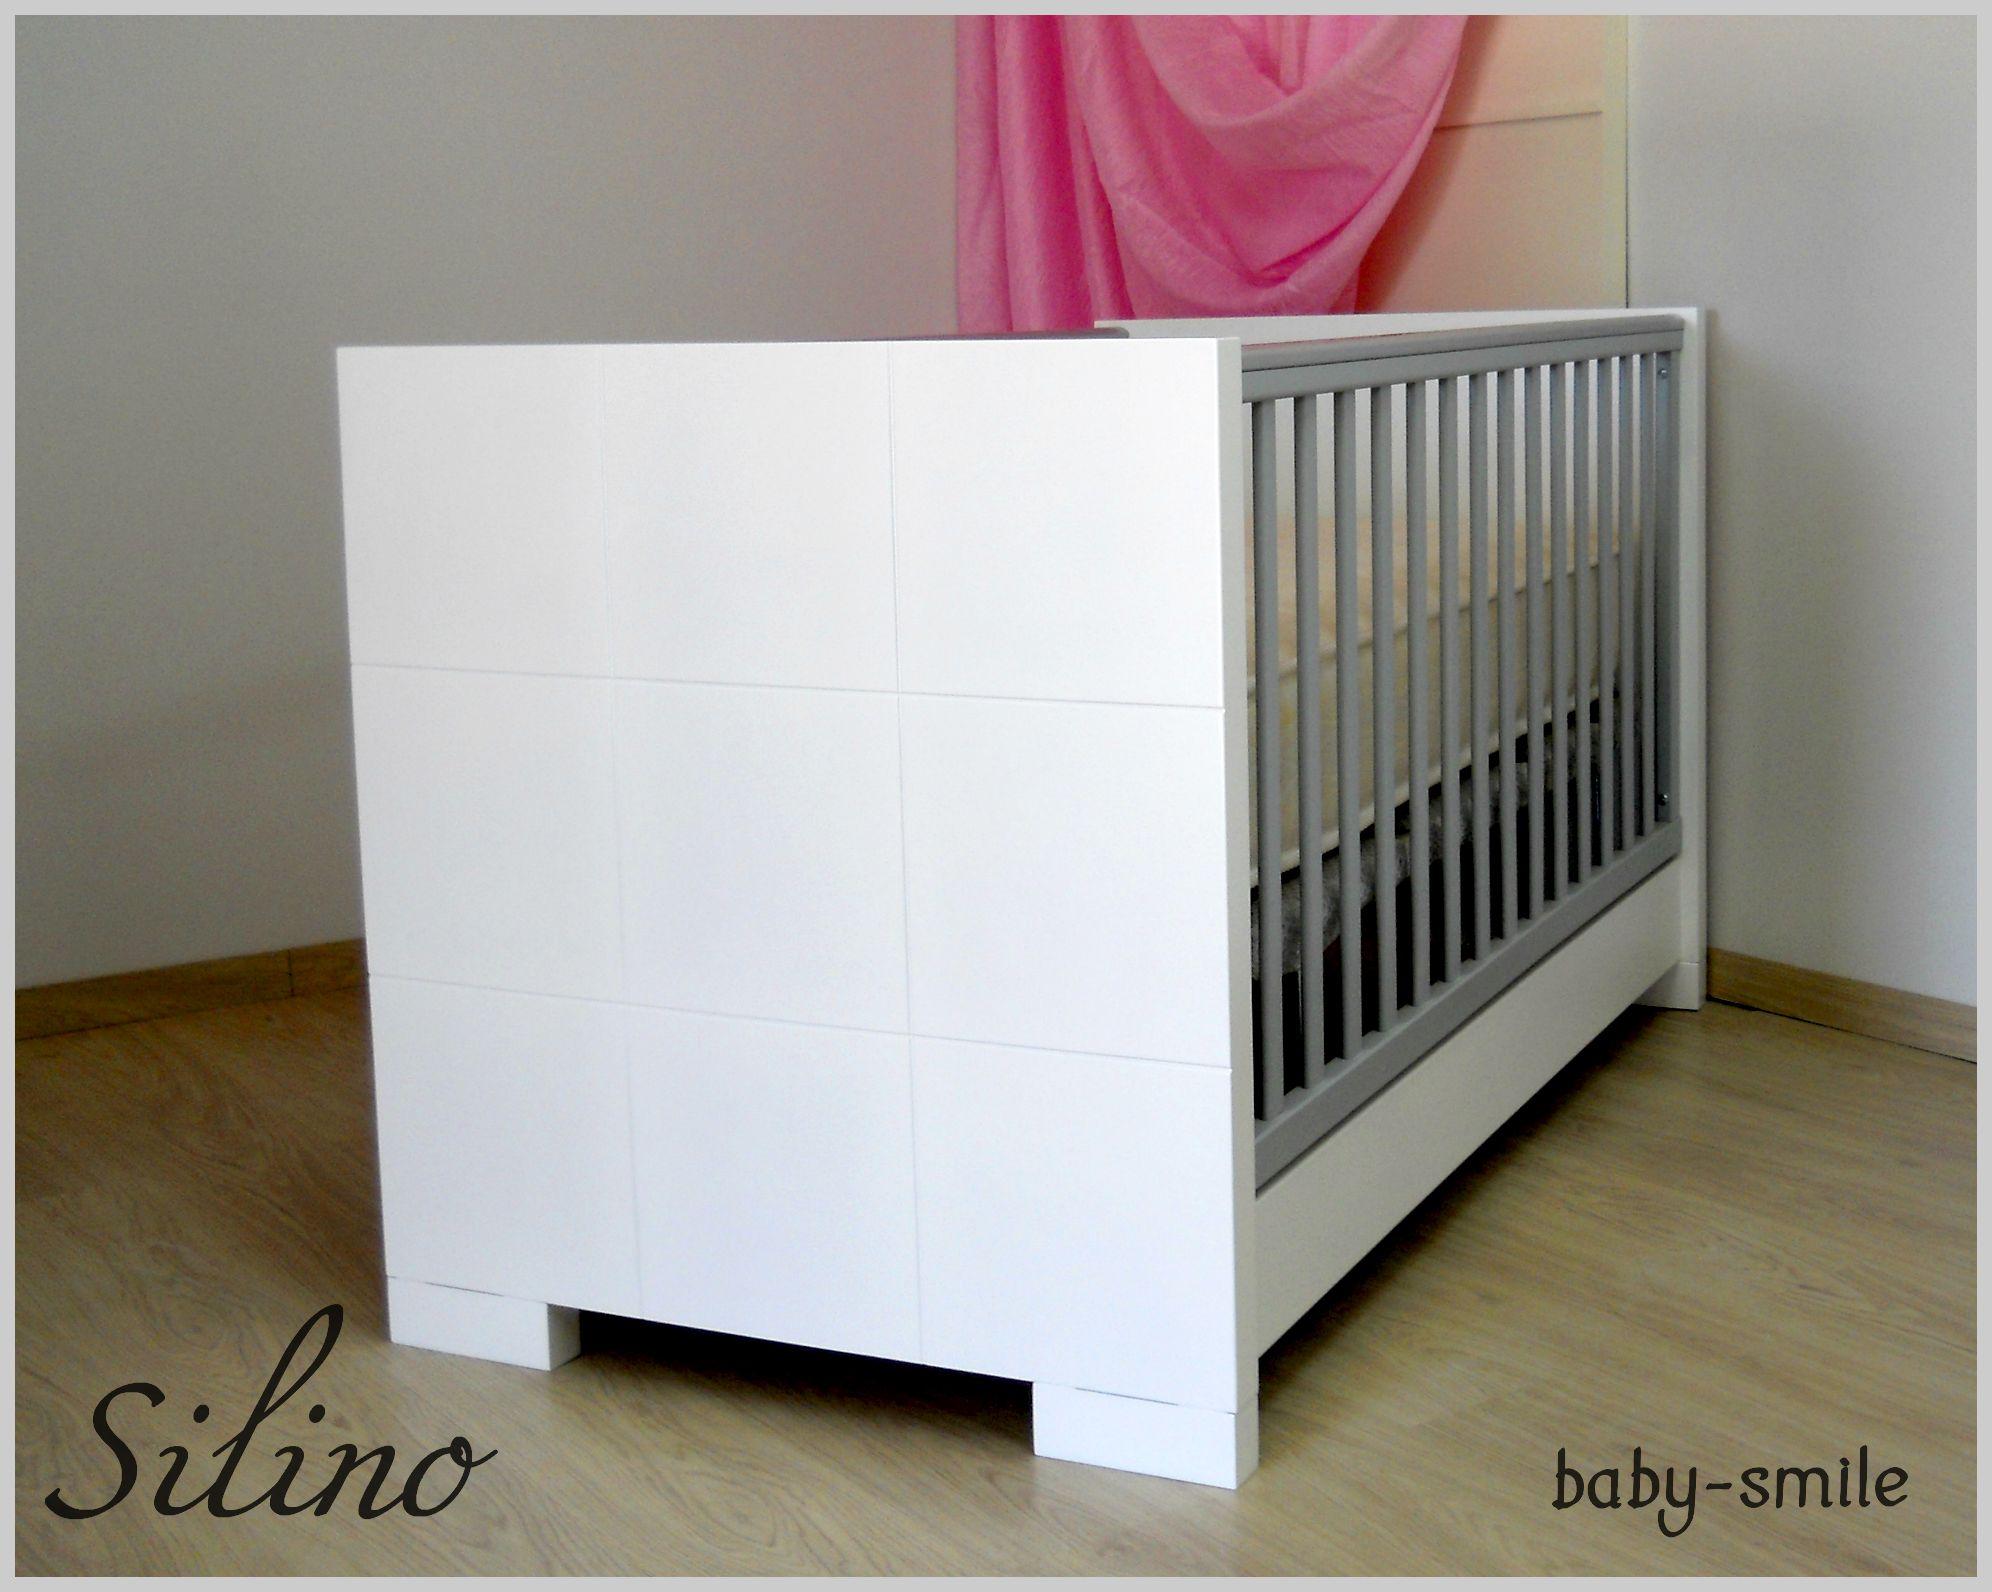 Προεφηβικό κρεβάτι Silino Baby Smile